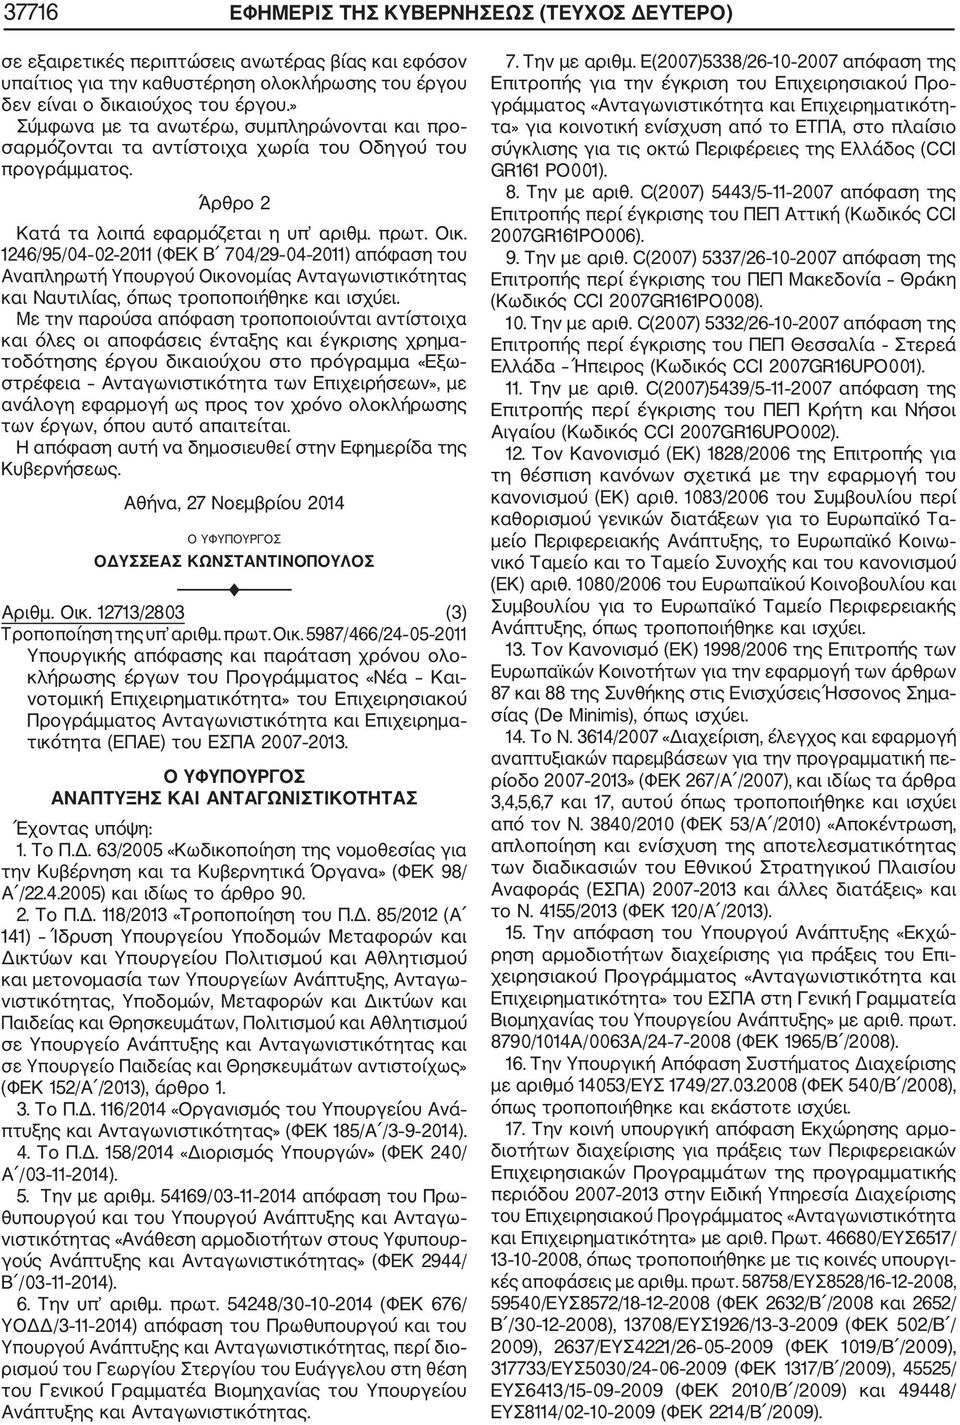 1246/95/04 02 2011 (ΦΕΚ Β 704/29 04 2011) απόφαση του Αναπληρωτή Υπουργού Οικονομίας Ανταγωνιστικότητας και Ναυτιλίας, όπως τροποποιήθηκε και ισχύει.